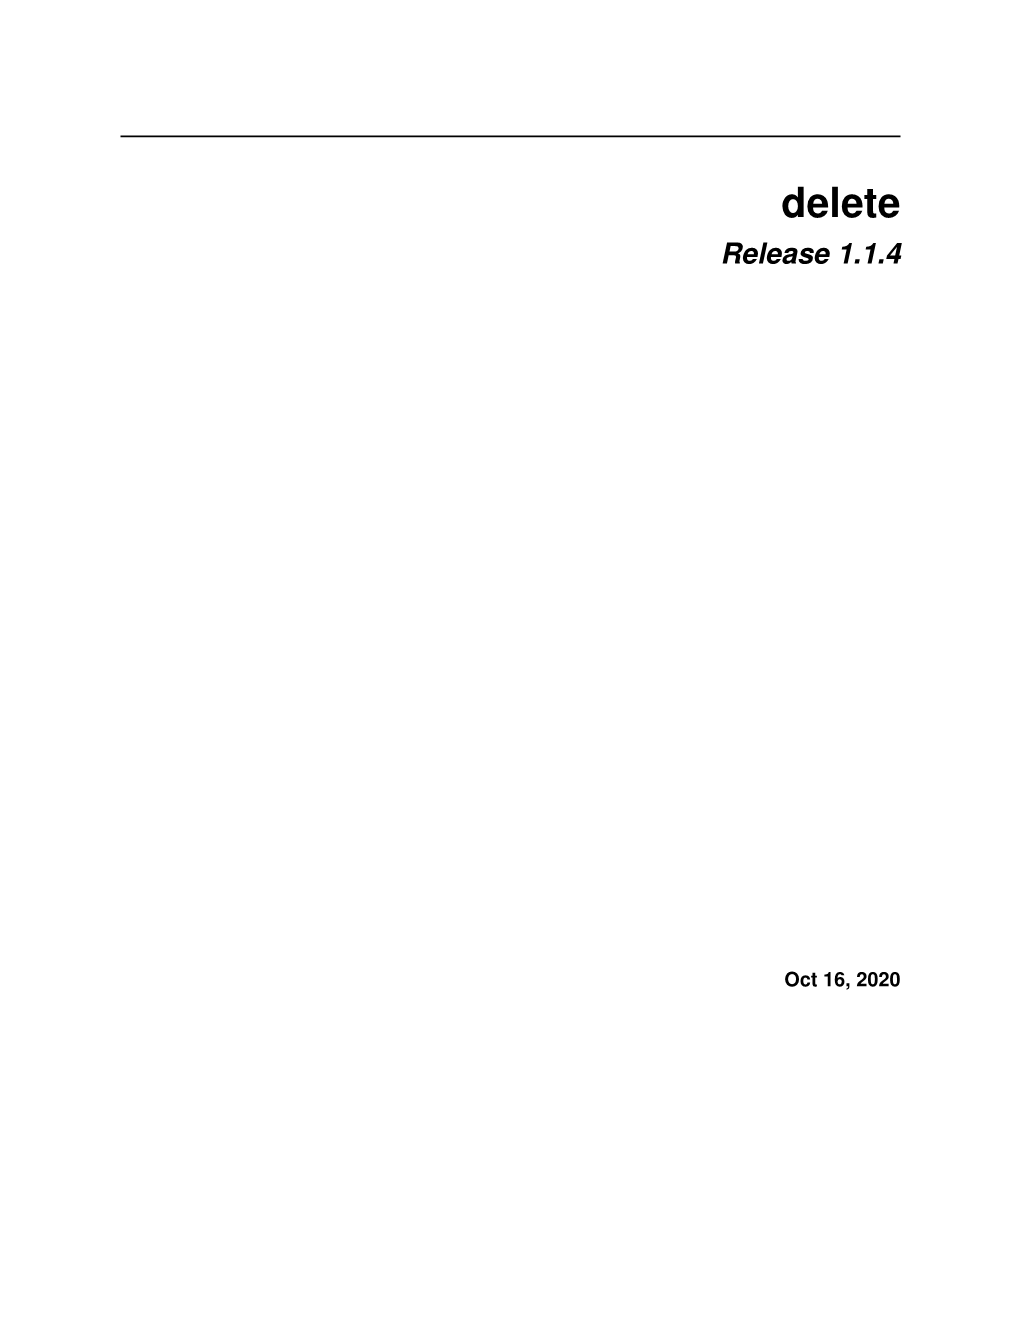 Delete Release 1.1.4